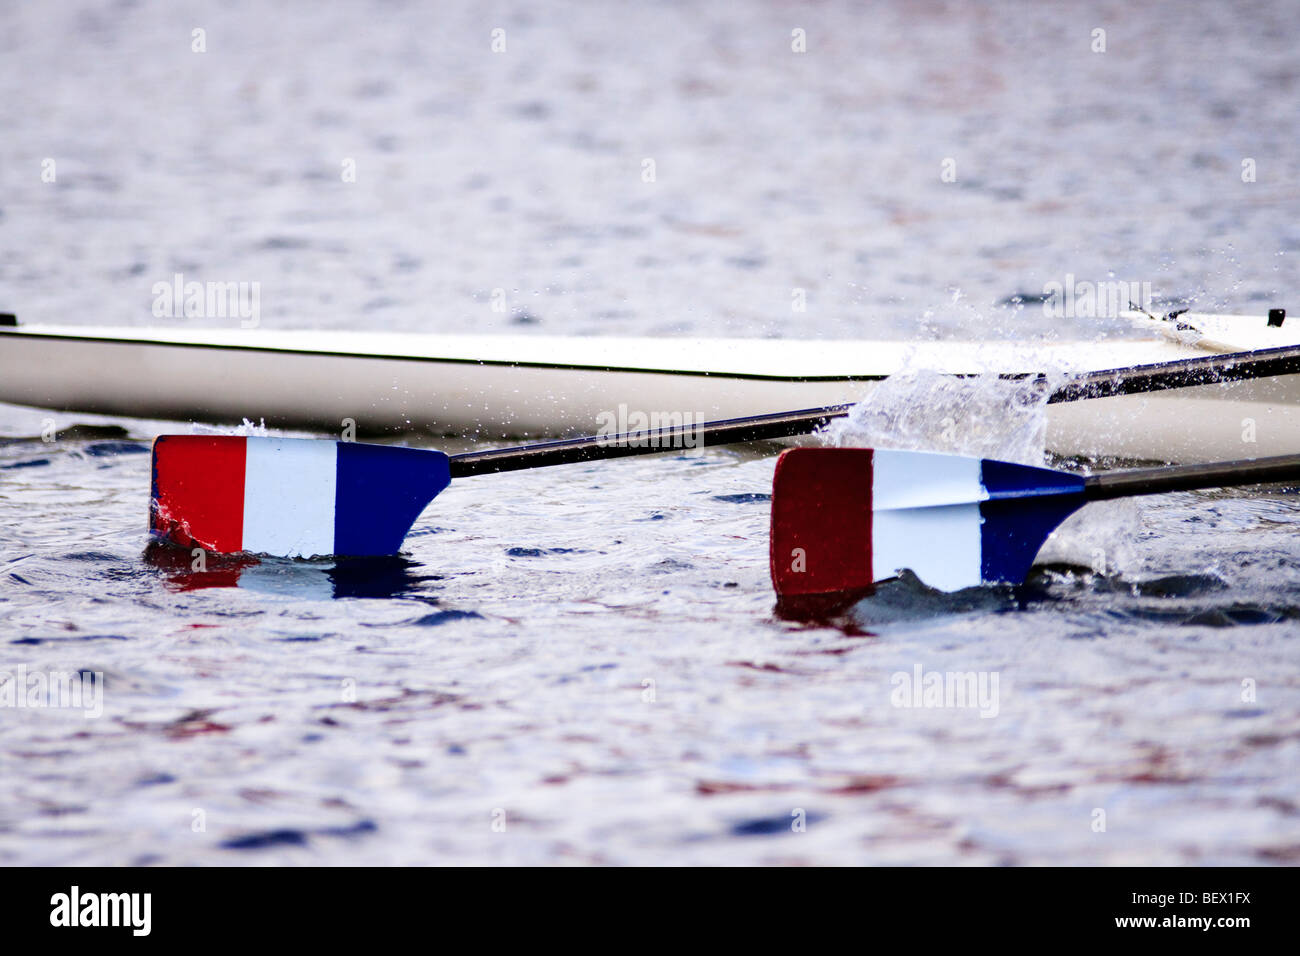 zwei Klingen eine Racing Boot im Wasser plantschen, während ein Ruder-Event - Farben sind französische Flagge nur spiegelverkehrt Stockfoto